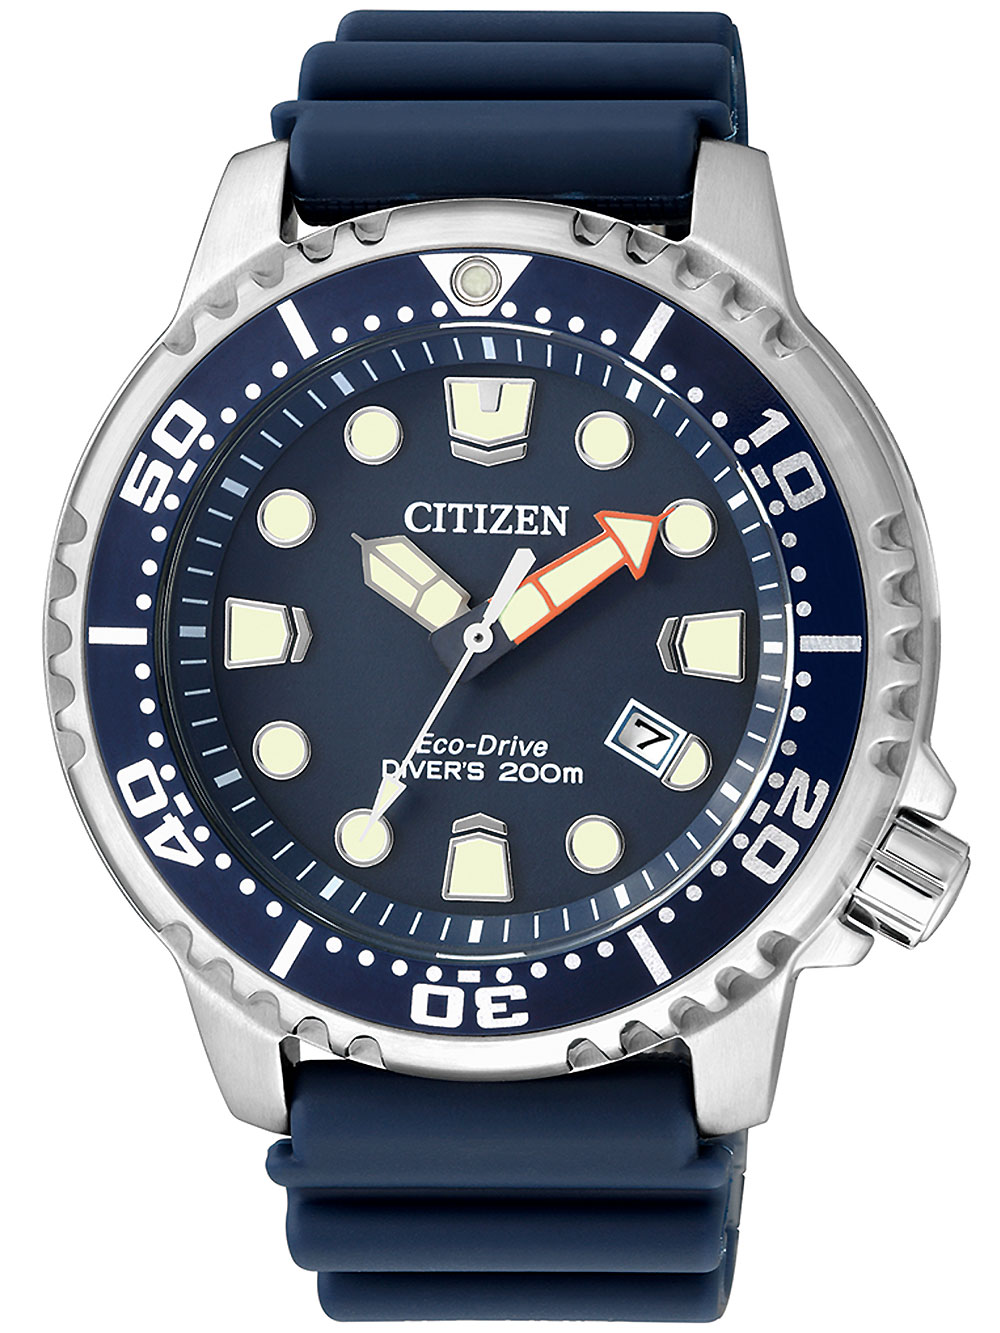 Pánské hodinky Citizen Eco-Drive BN0151-17L Promaster Sea